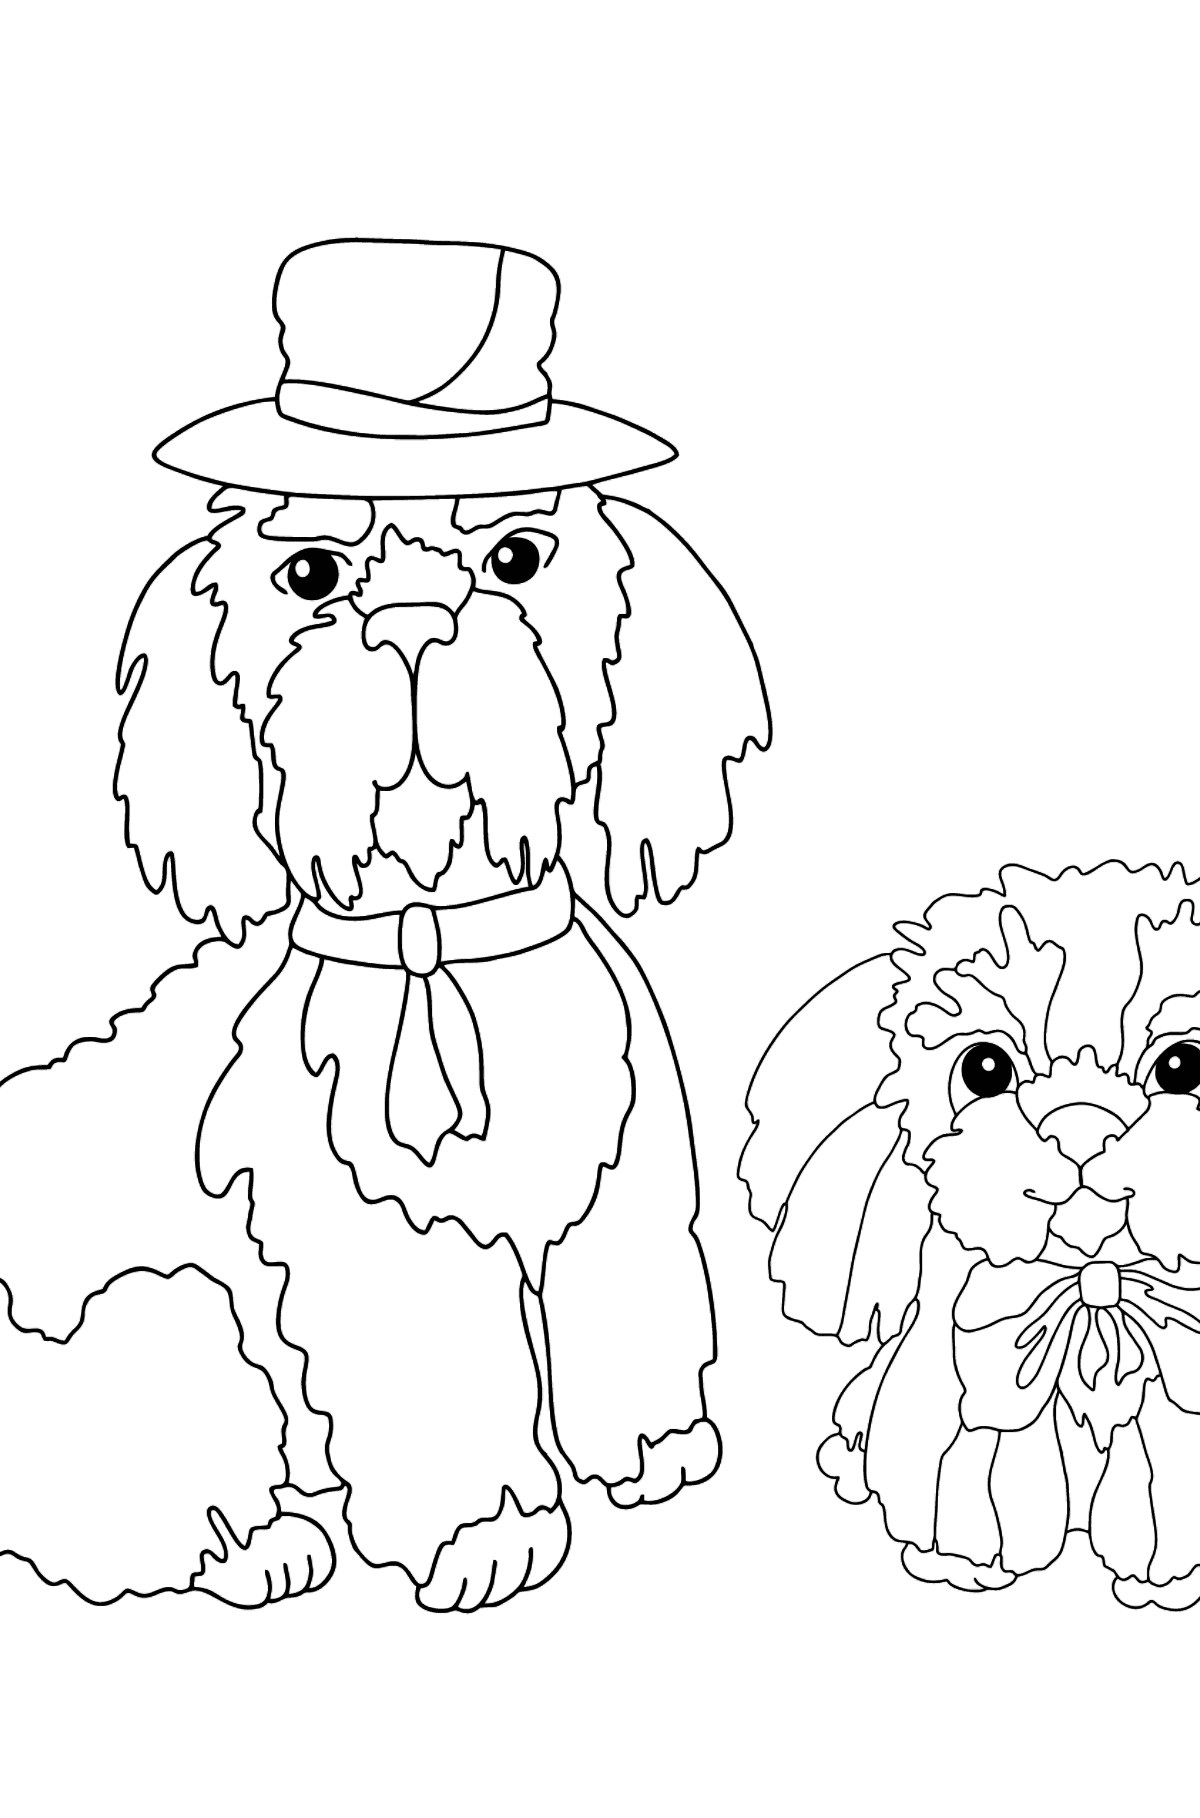 Desenho de cães encantador para colorir (difícil) - Imagens para Colorir para Crianças